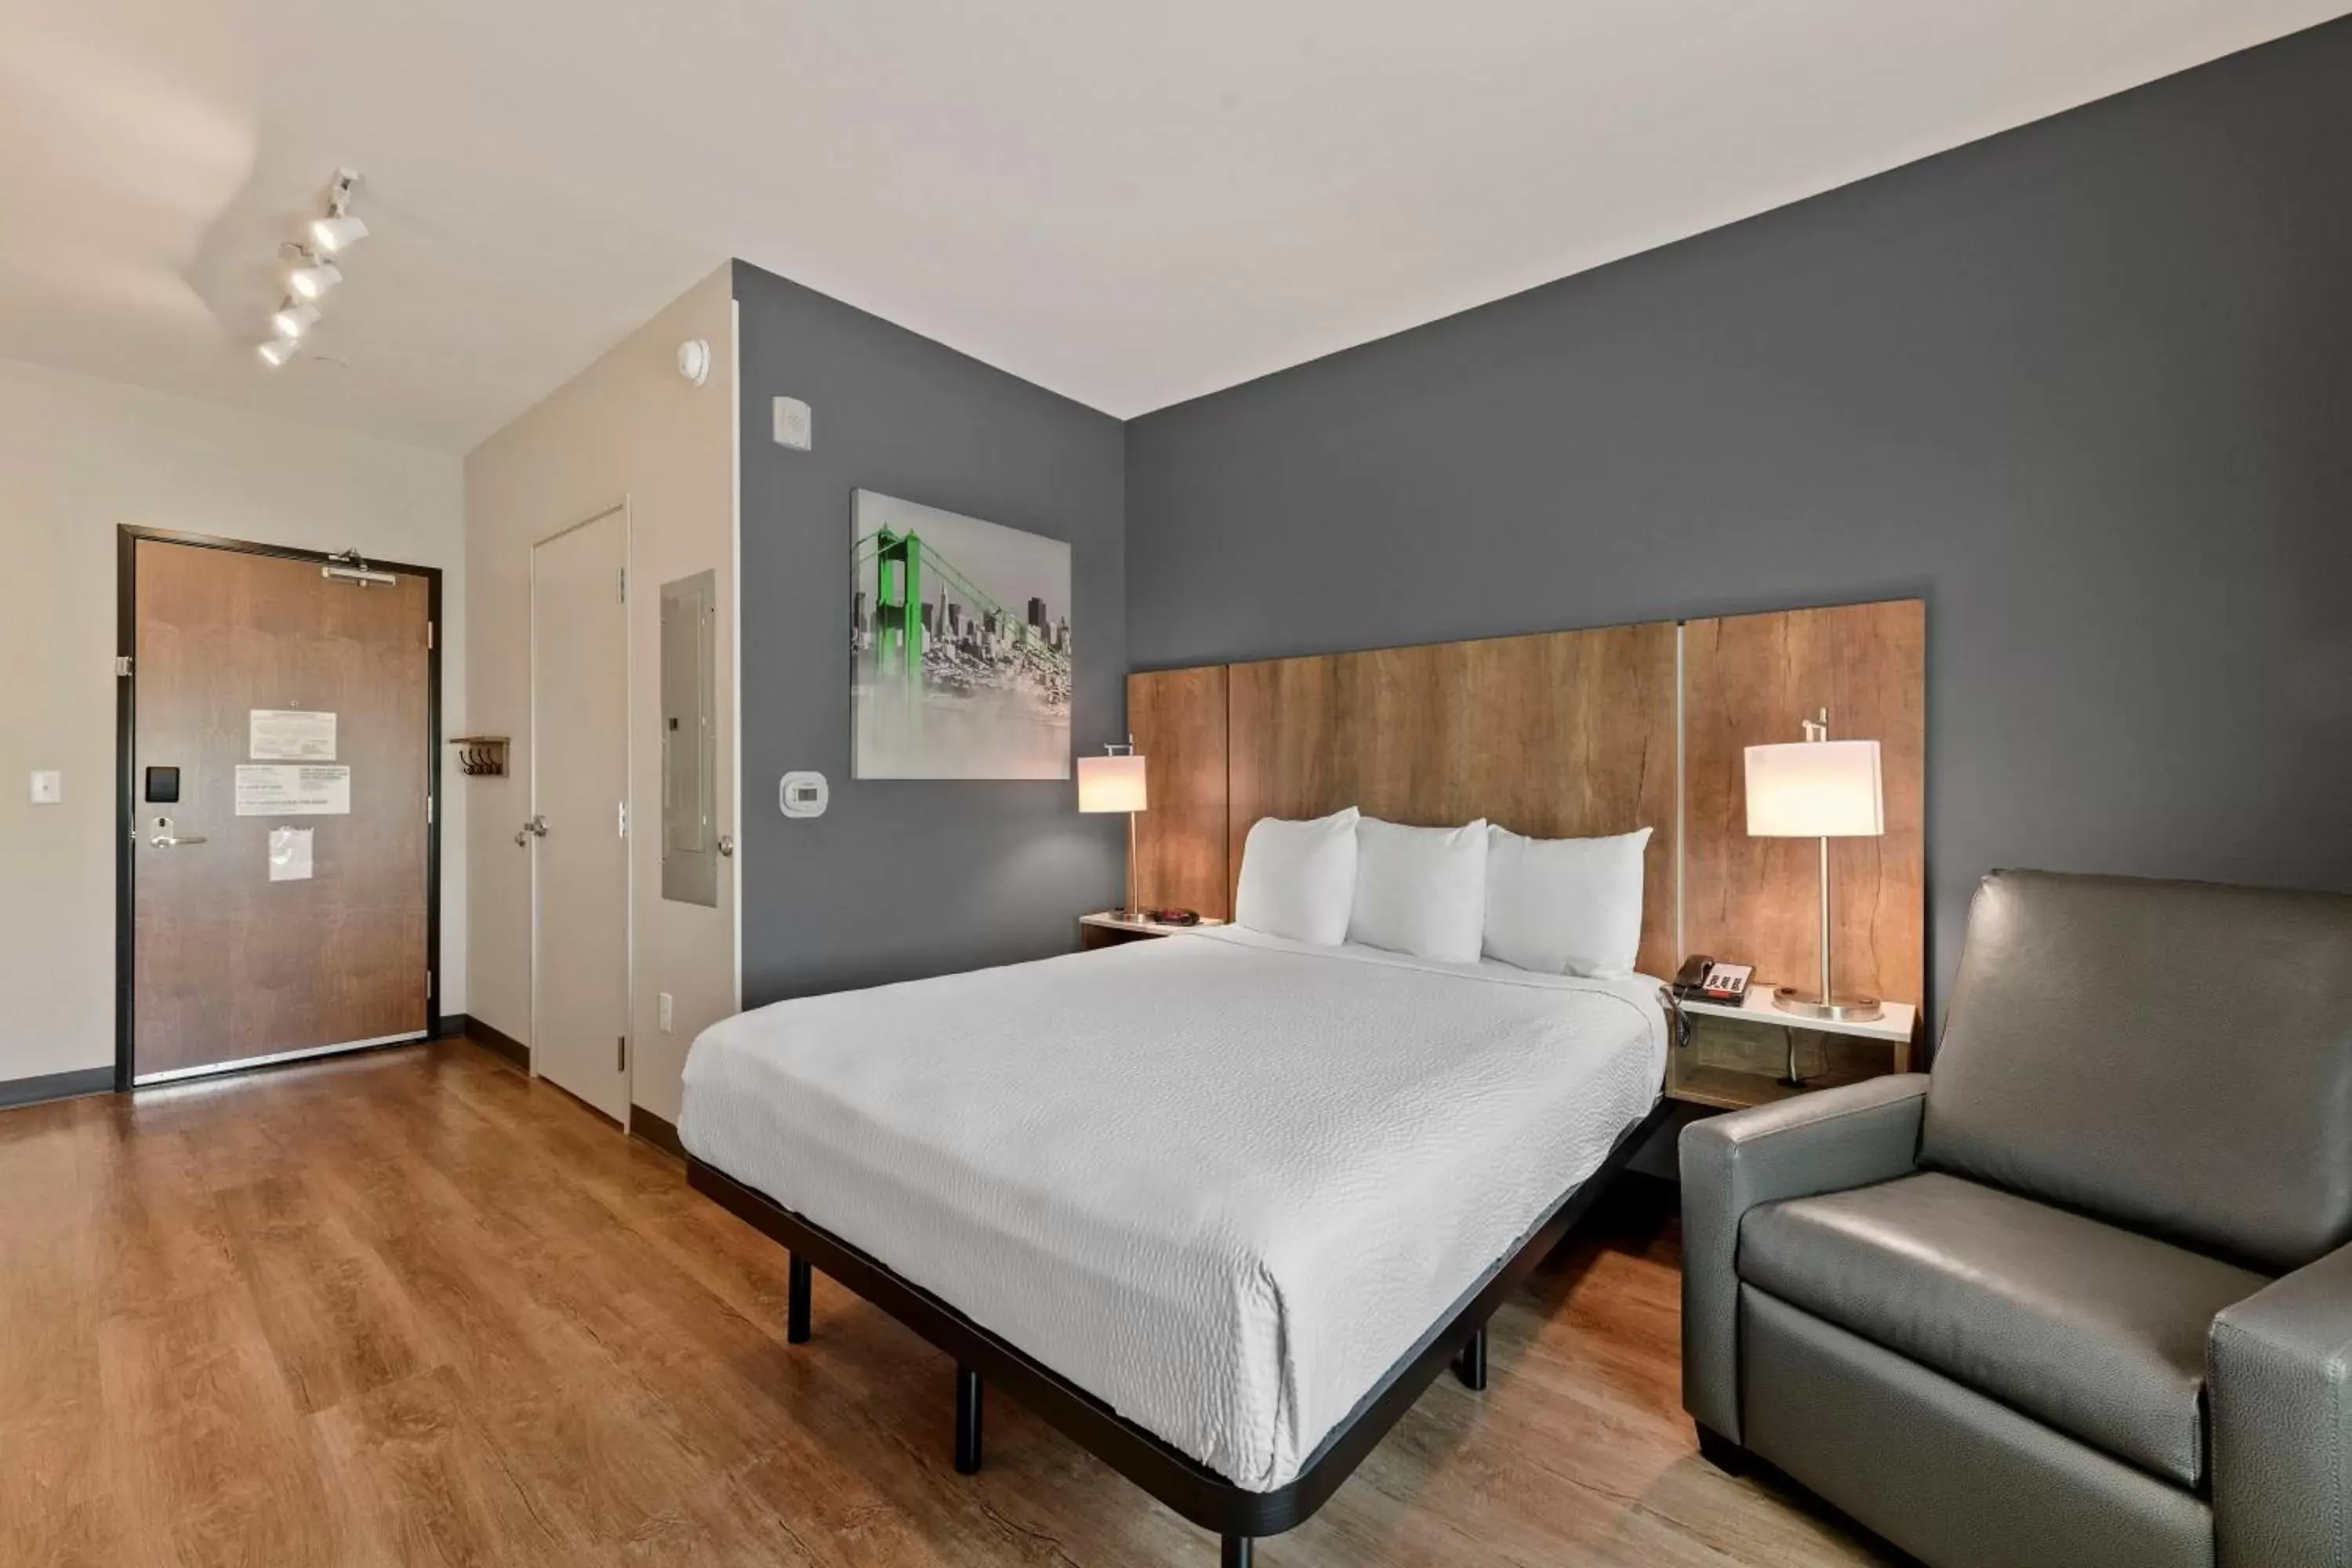 Bed in Extended Stay America Premier Suites - Savannah - Pooler